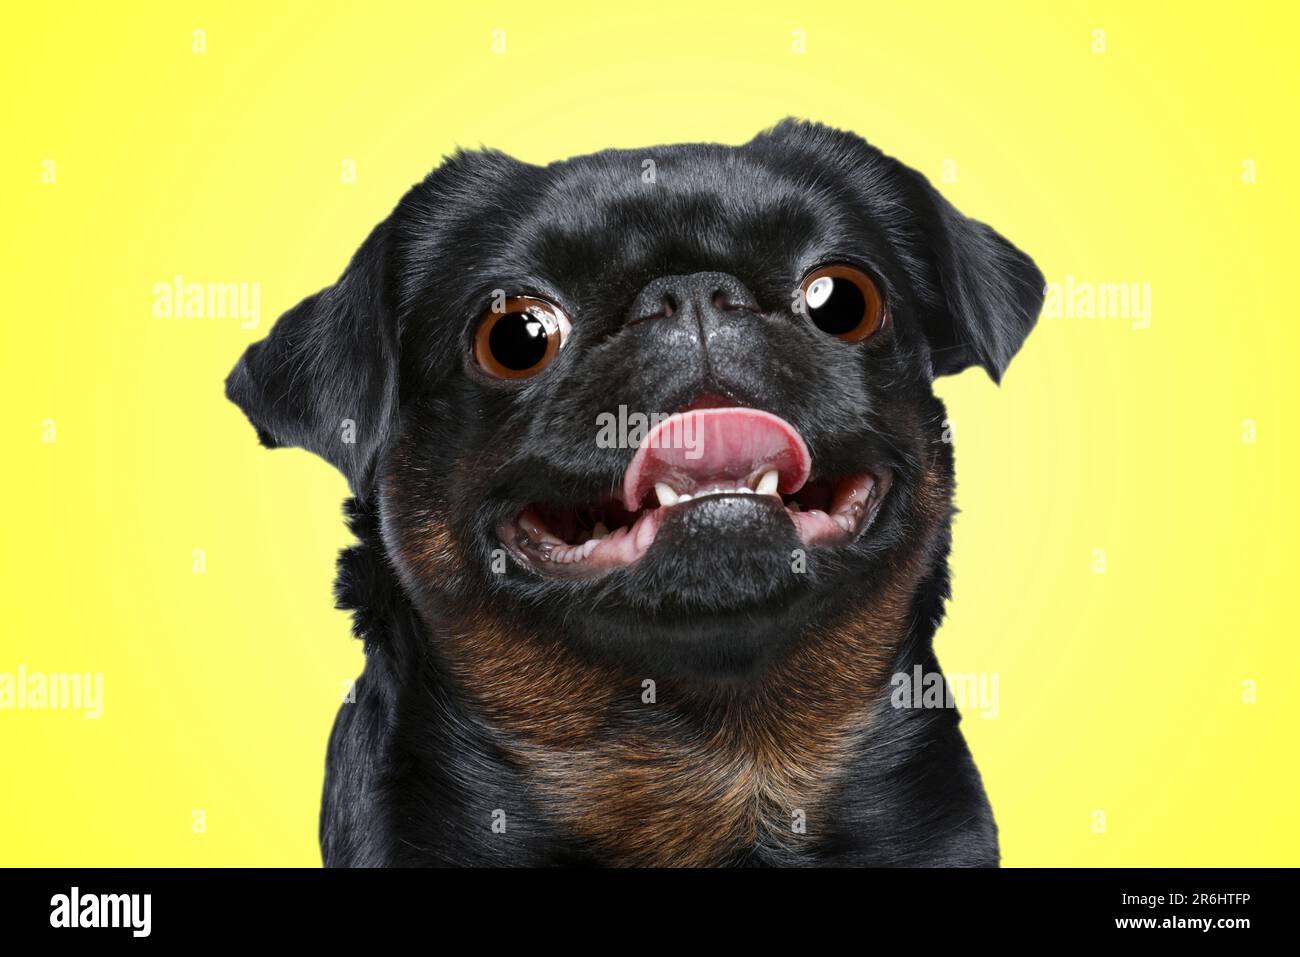 Cute surprised Petit Brabancon dog with big eyes on yellow background Stock Photo